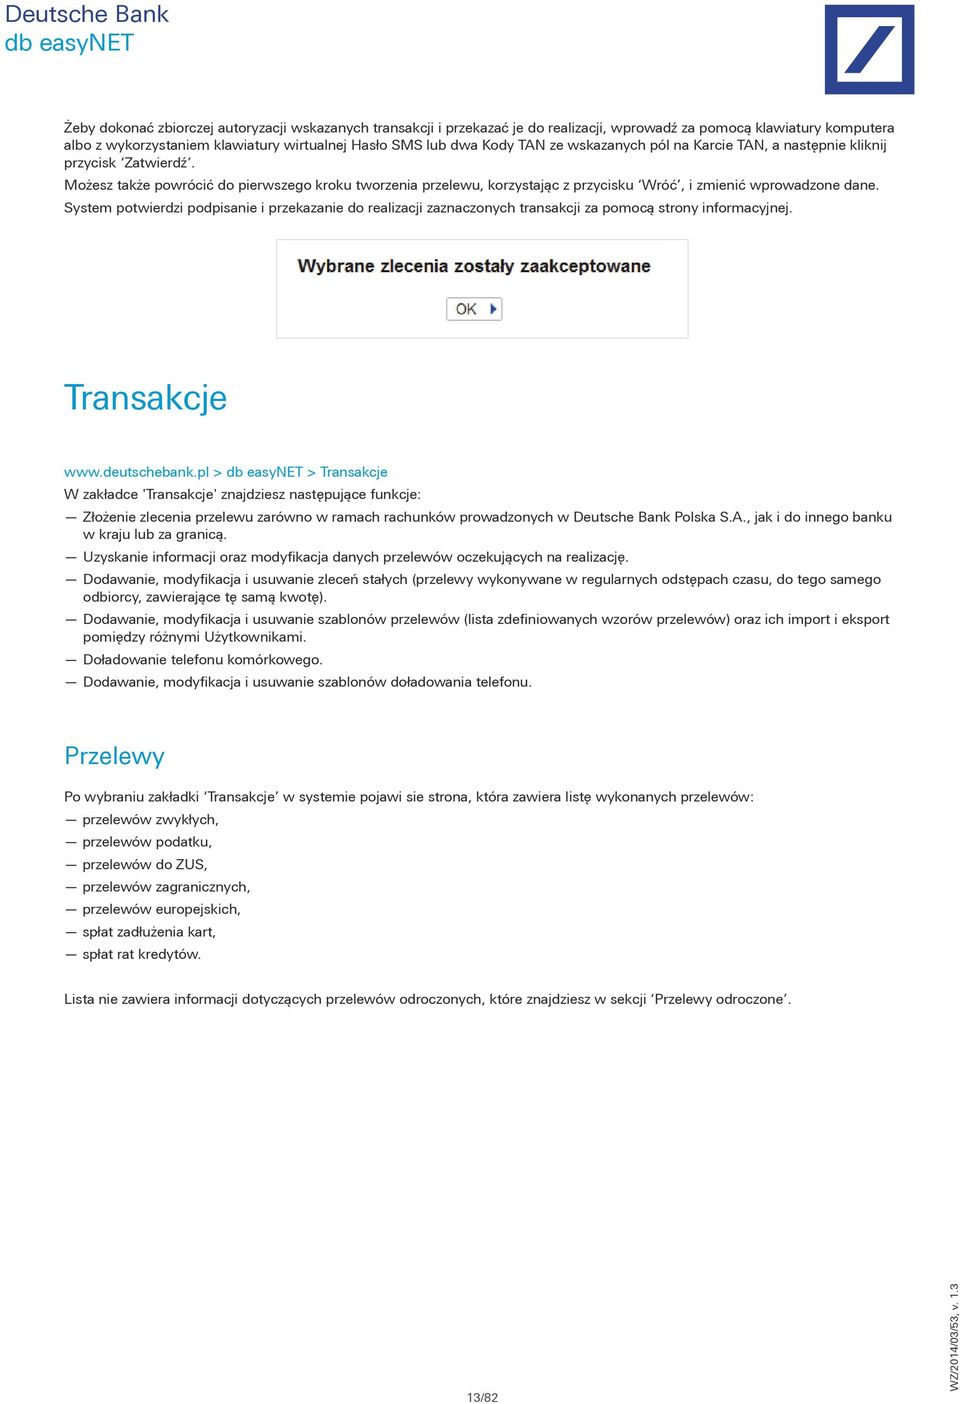 System potwierdzi podpisanie i przekazanie do realizacji zaznaczonych transakcji za pomocą strony informacyjnej. Transakcje www.deutschebank.